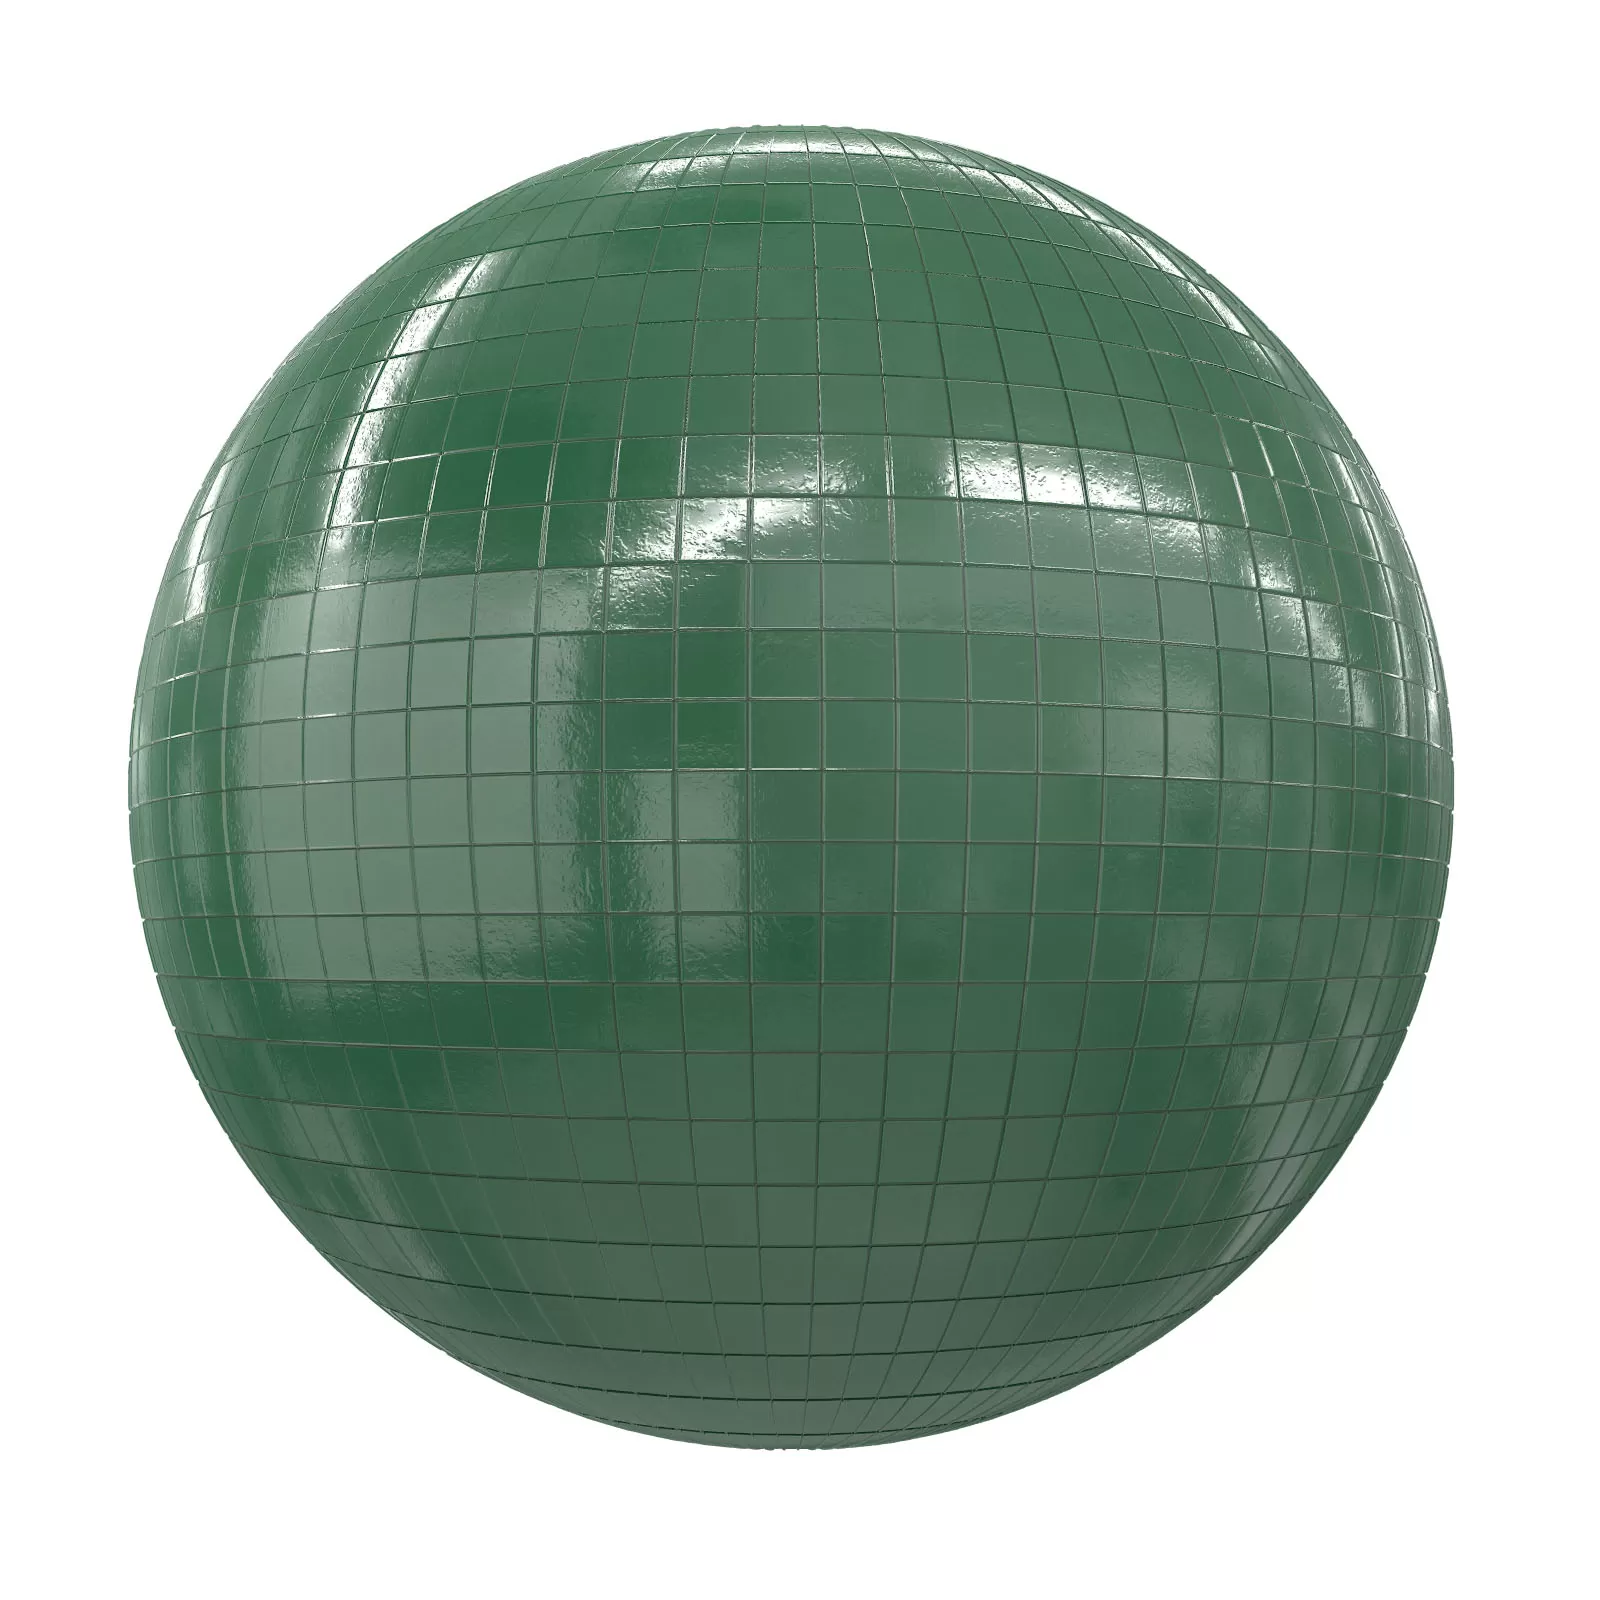 PBR CGAXIS TEXTURES – TILES – Green Tiles 1